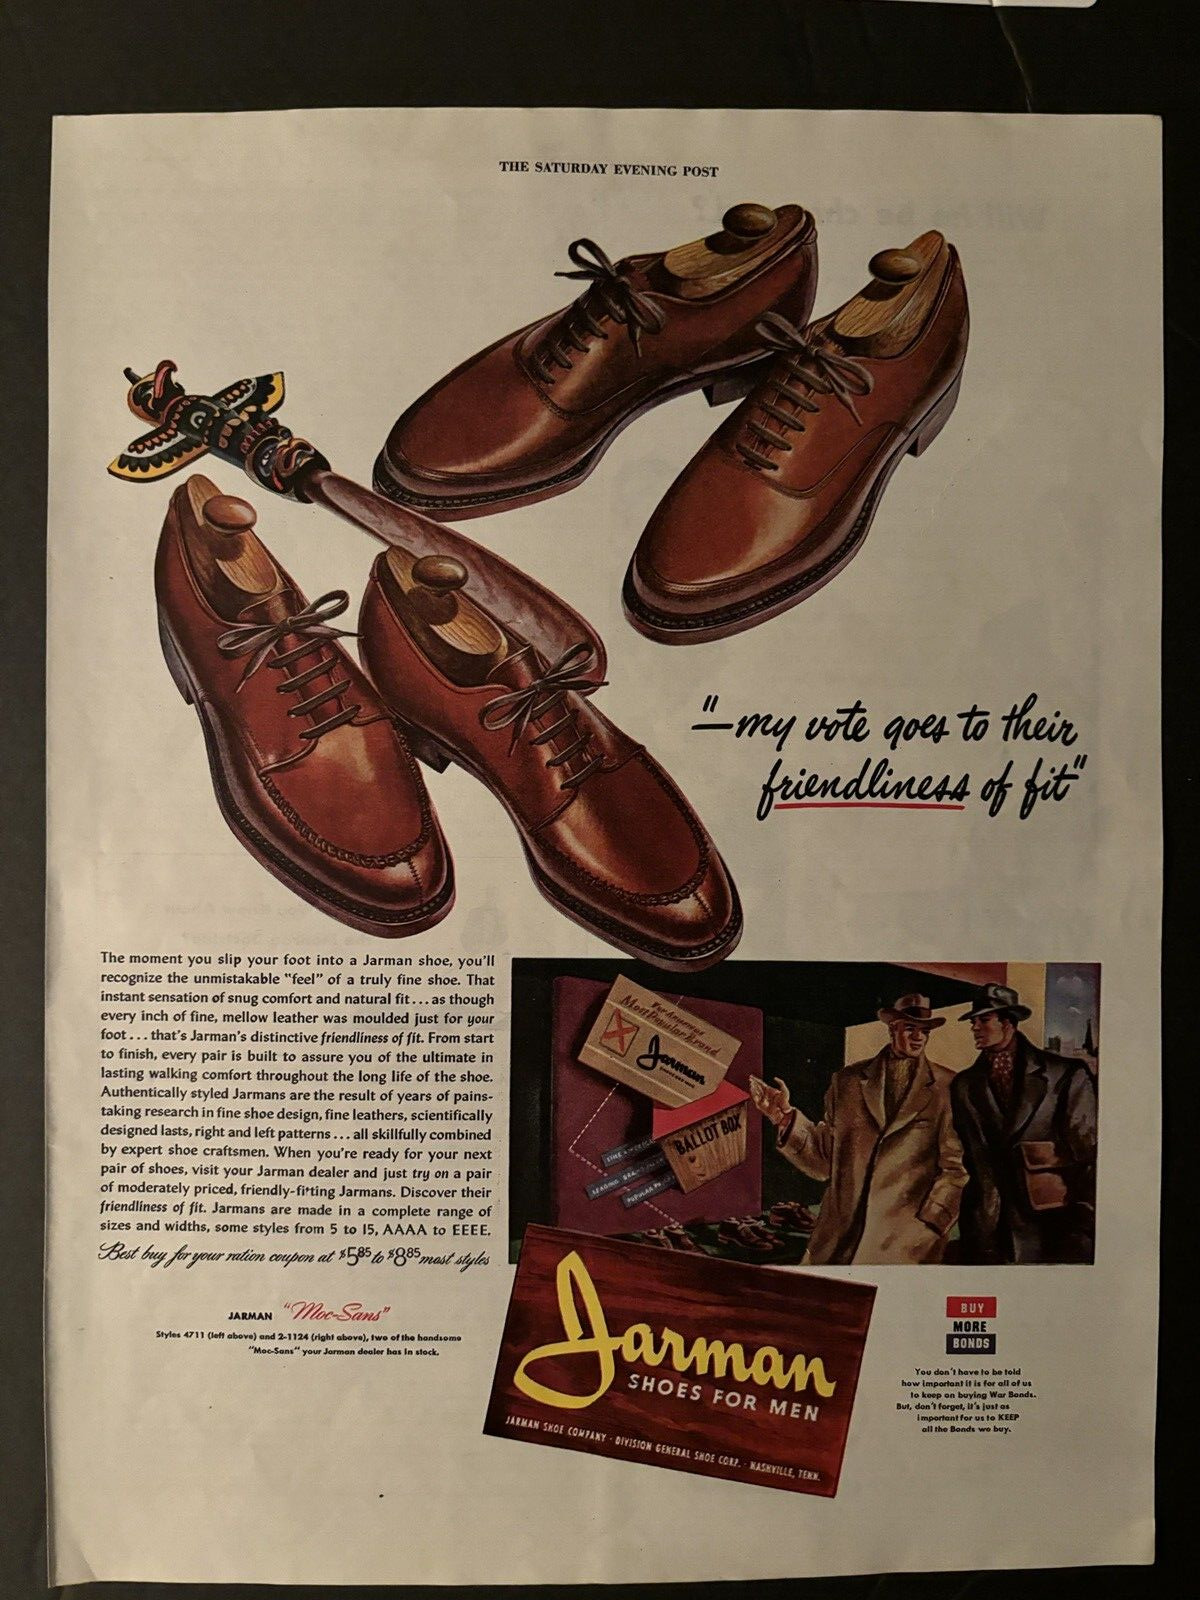 JARMAN SHOES FOR MEN BUY WAR BONDS SHOES VINTAGE PRINT AD 1944